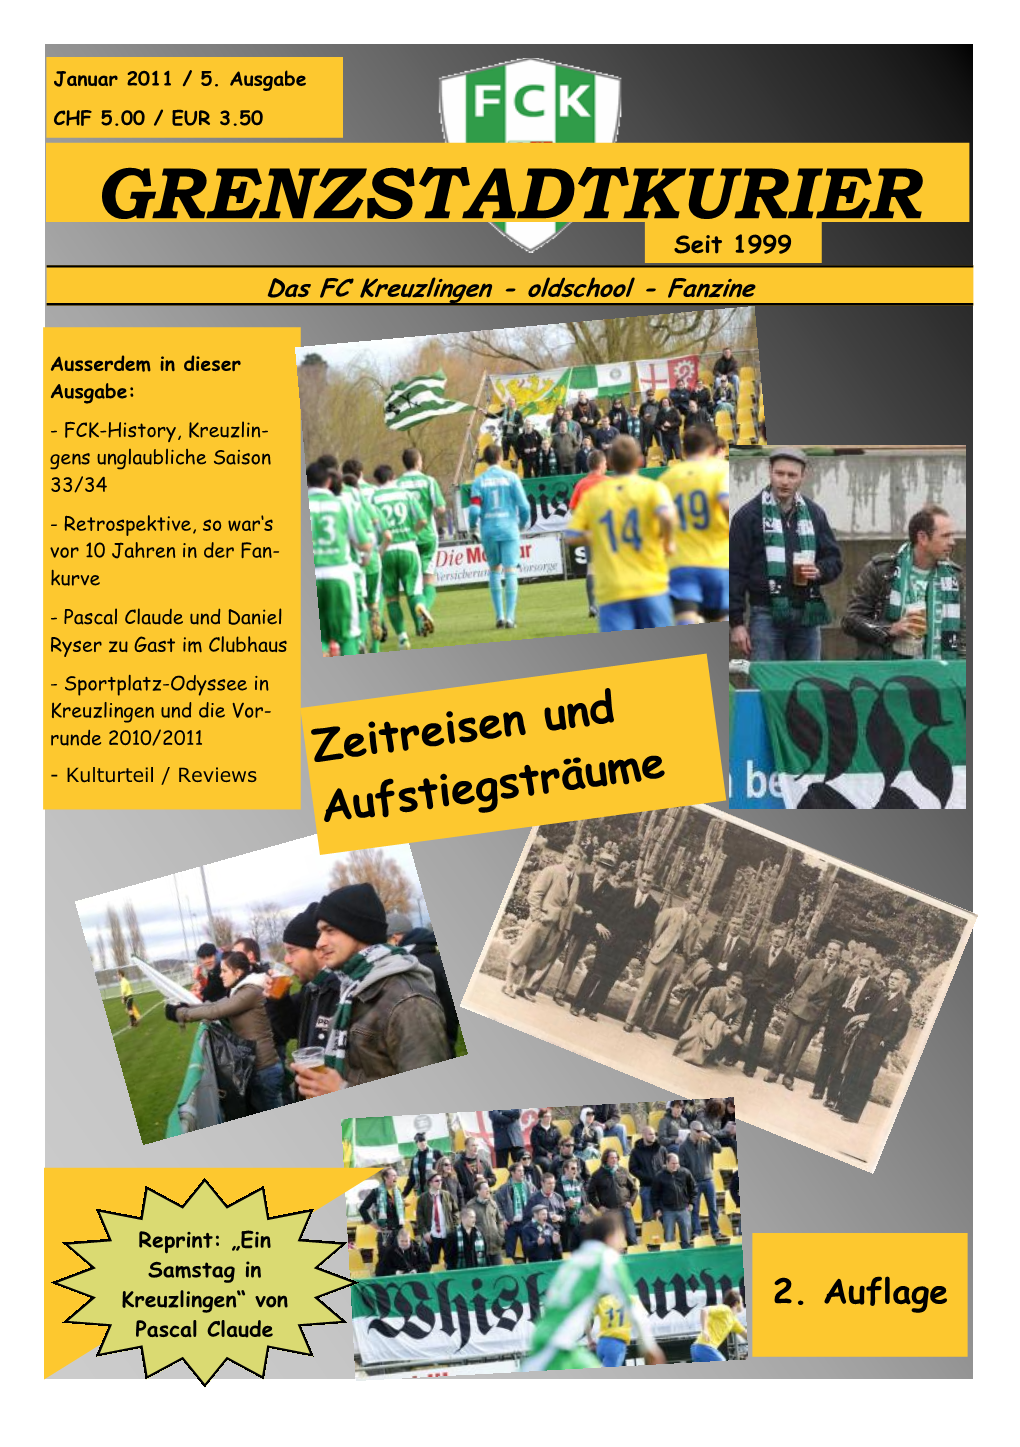 GRENZSTADTKURIER Seit 1999 Das FC Kreuzlingen - Oldschool - Fanzine